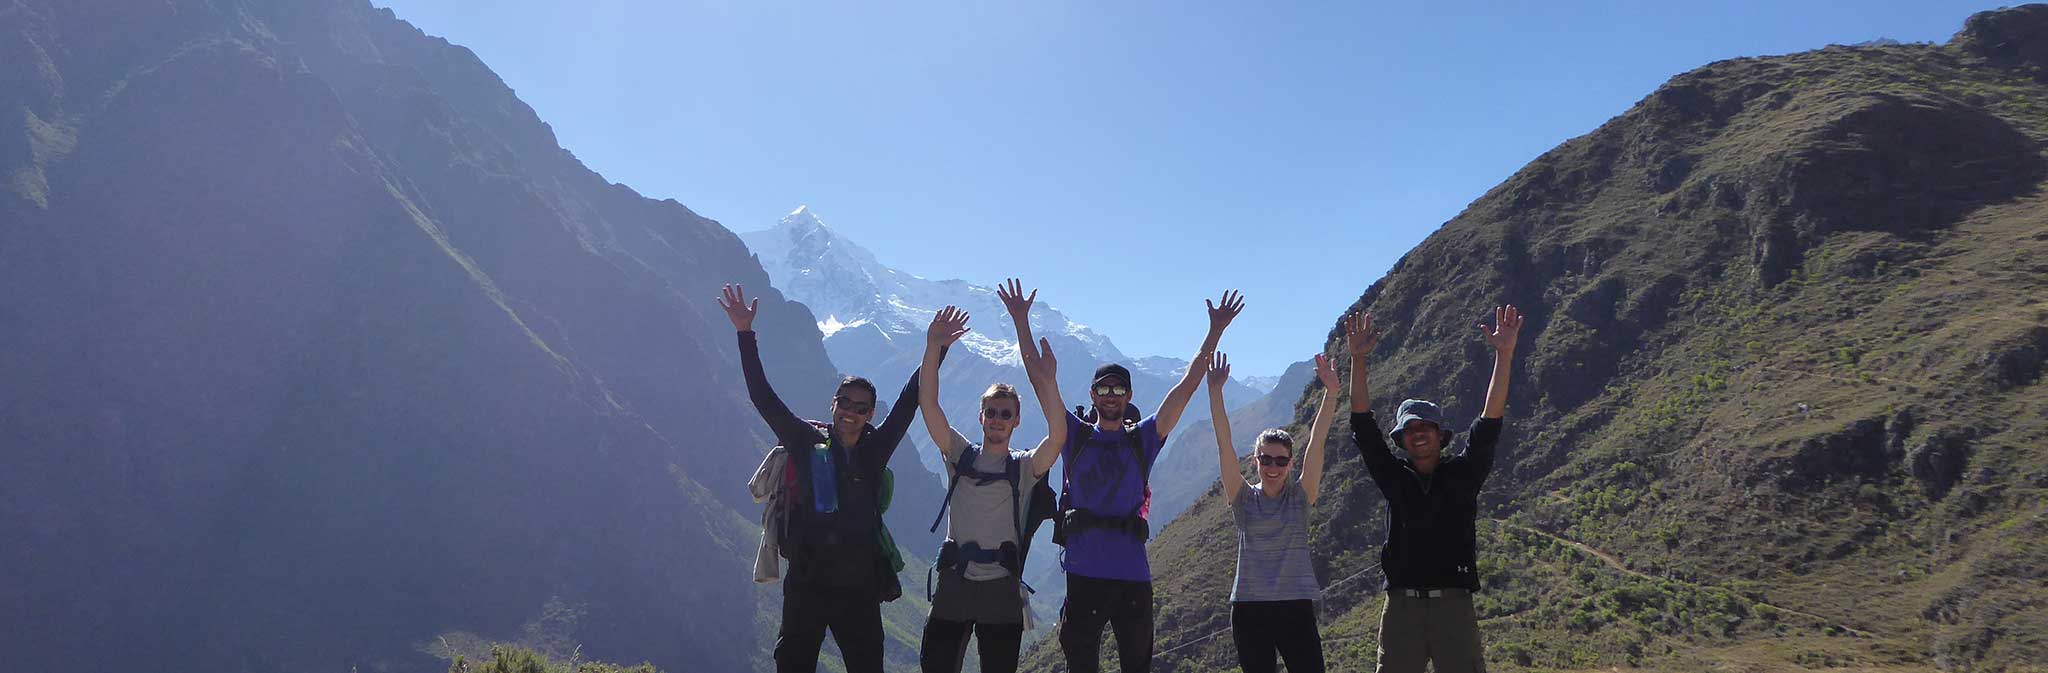 Classic Inca Trail to Machu Picchu in 4 days